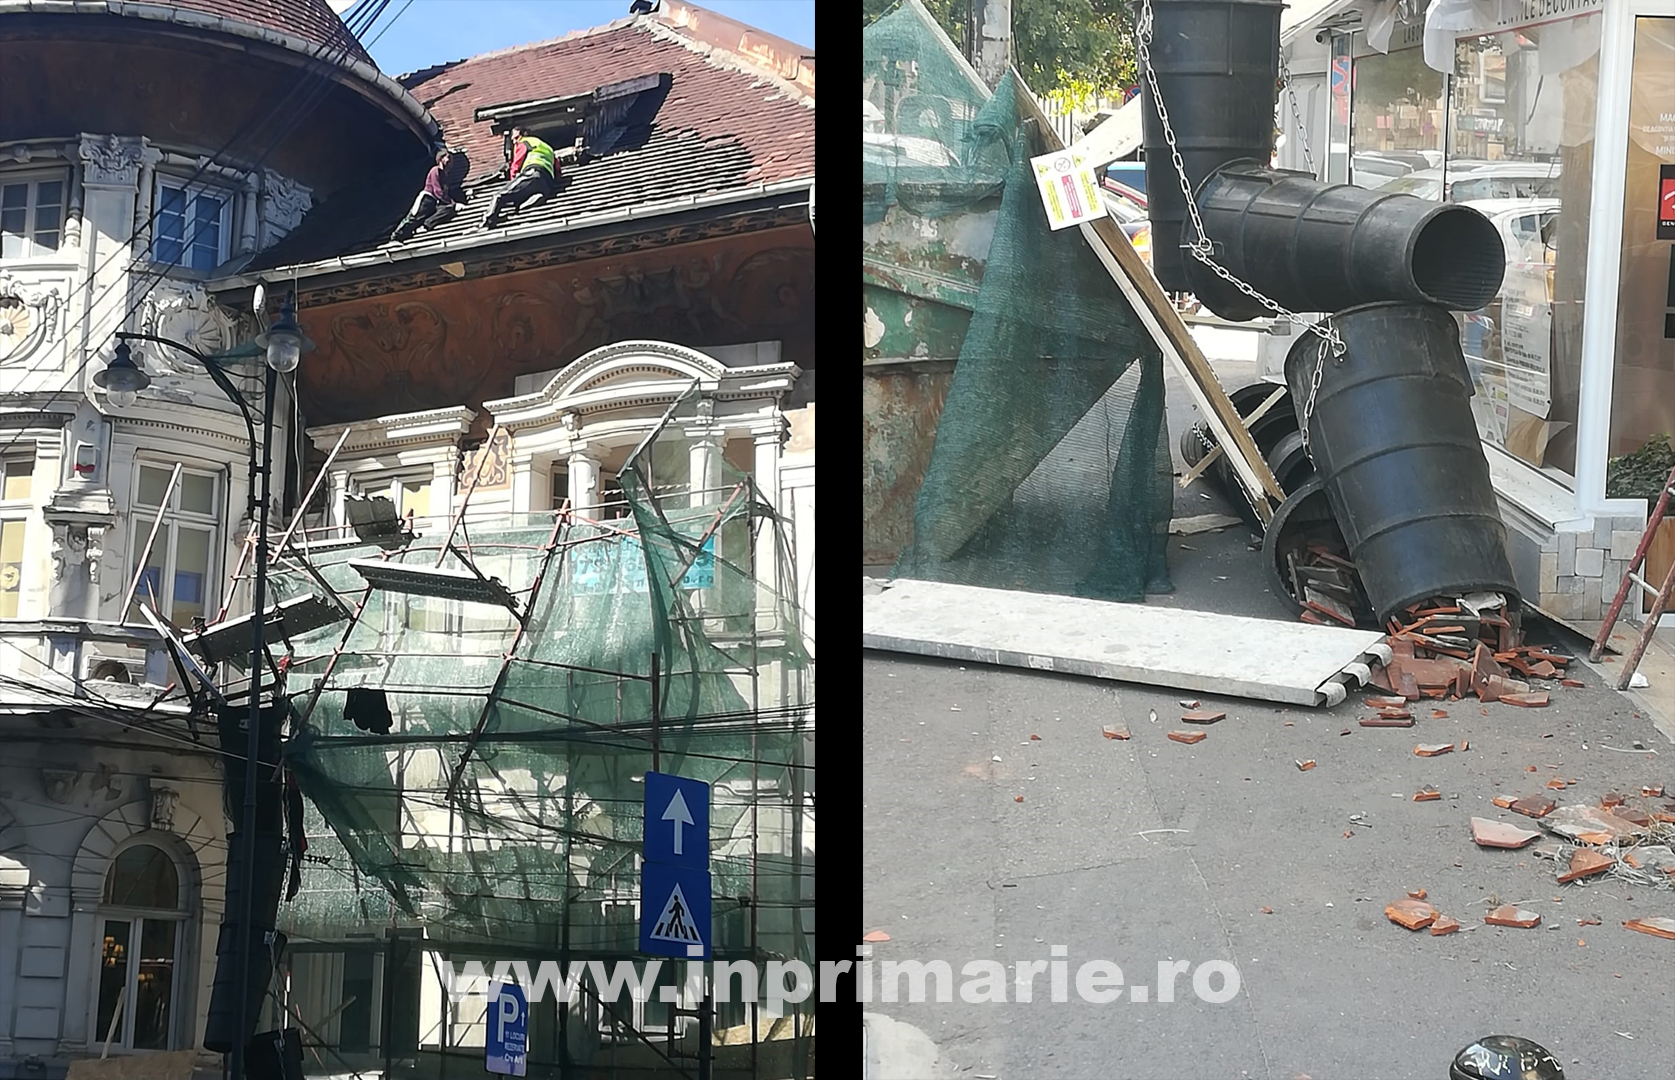 INCIDENT. Schela unei clădiri vechi aflate în renovare s-a prăbușit în zona Pieței Romane. Doi muncitori au rămas blocați pe acoperișul clădirii.